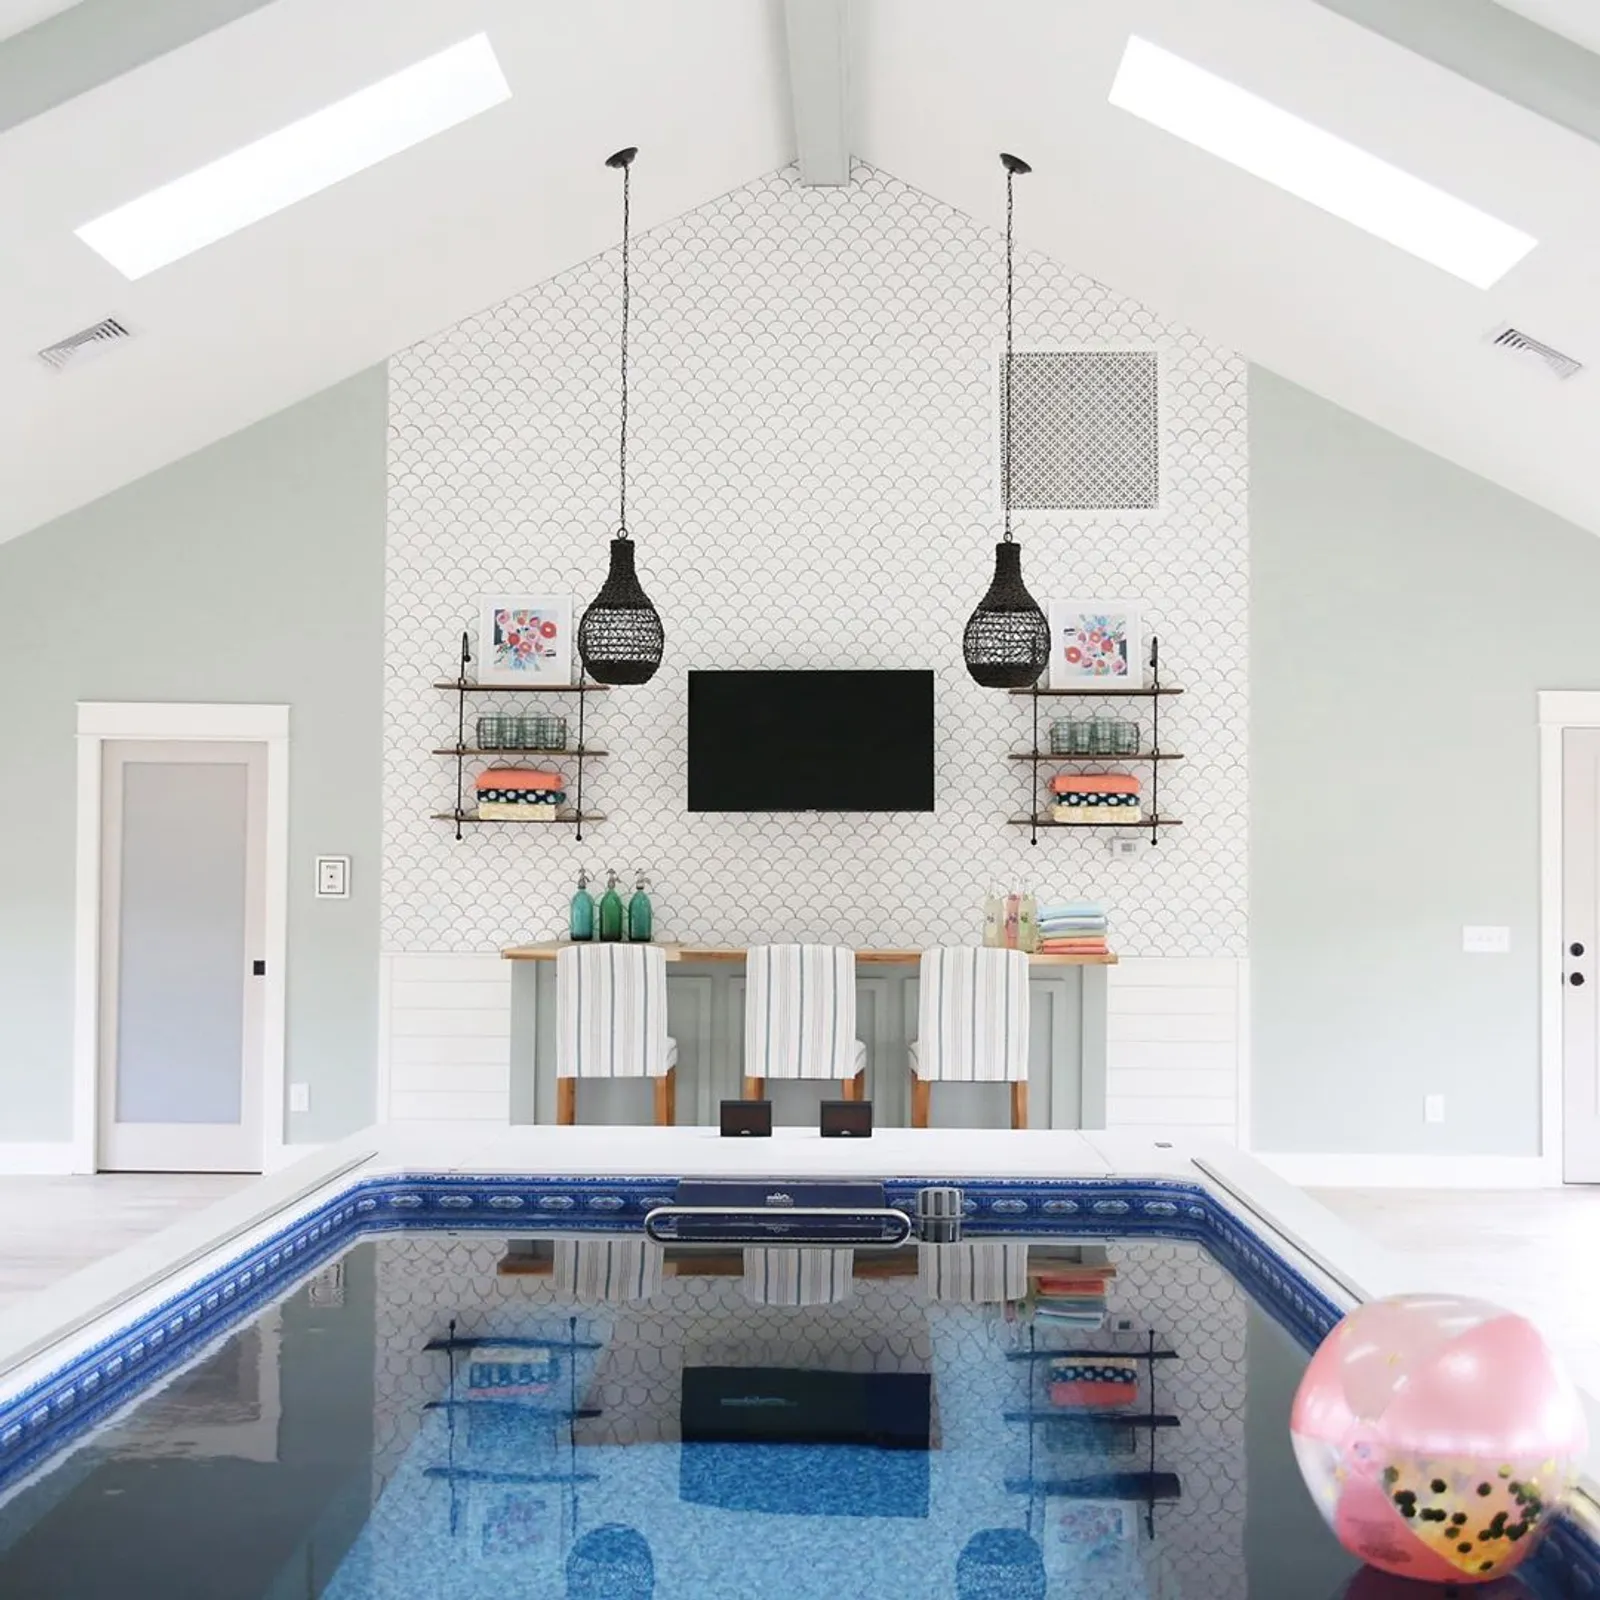 10 Desain Kolam Renang Indoor di Rumah, Tampak Mewah dan Modern